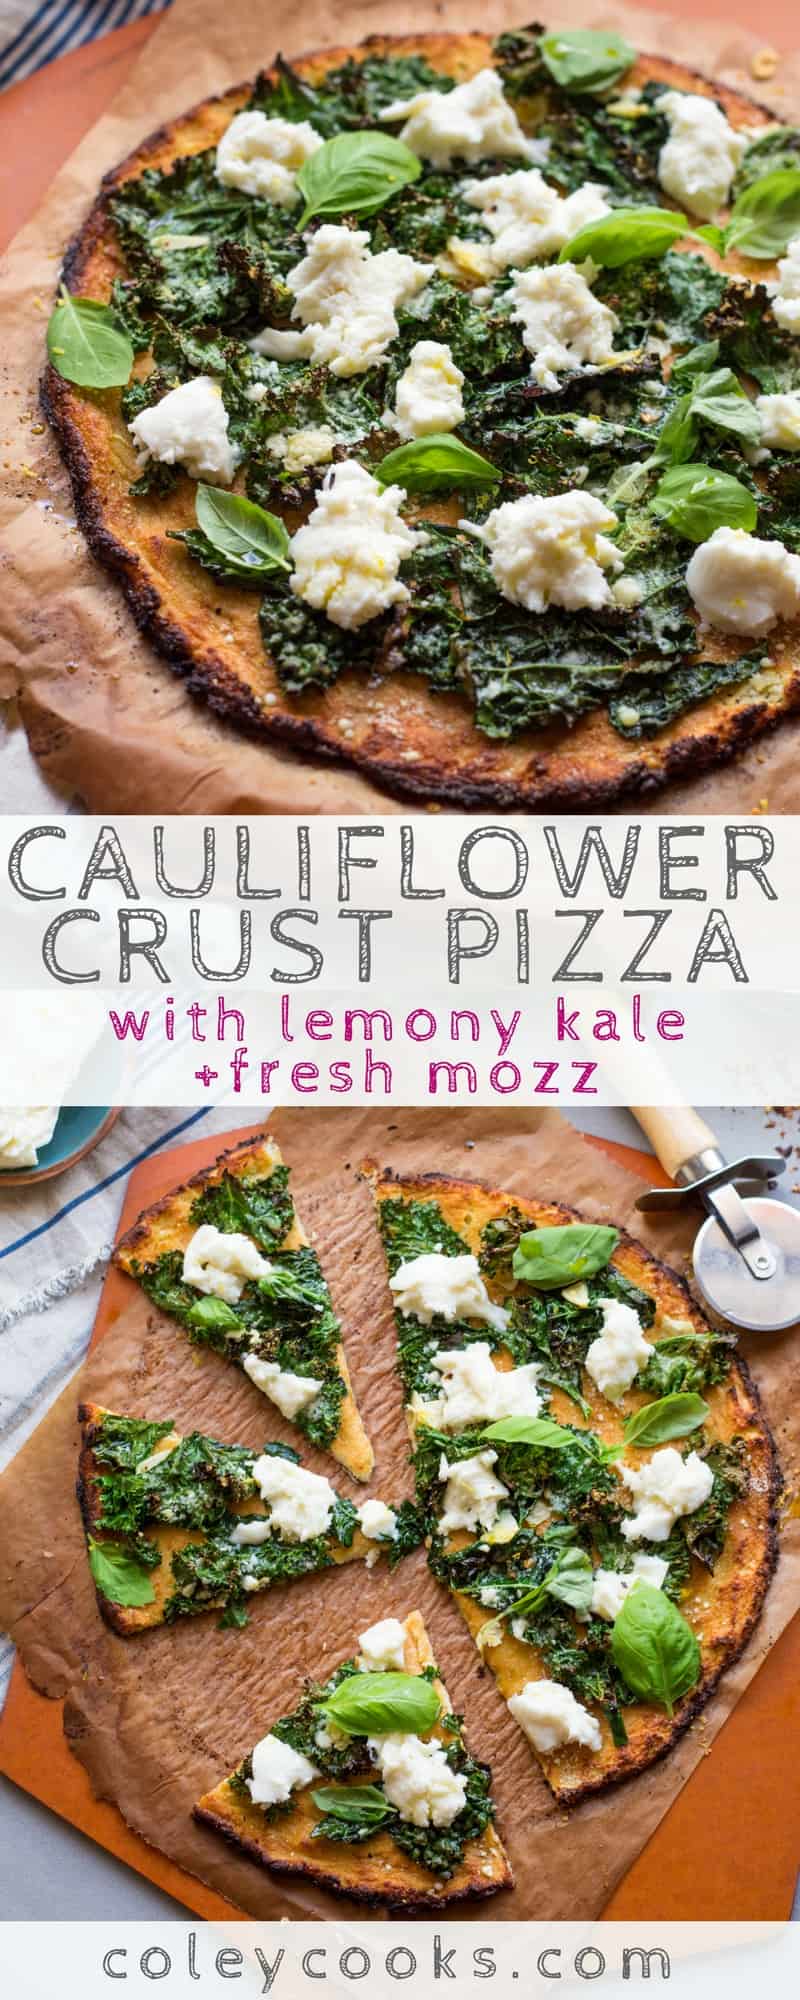 CAULIFLOWER CRUST PIZZA with LEMONY KALE + FRESH MOZZ | Easy + healthy cauliflower crust pizza with fresh mozzarella and lemony kale! | ColeyCooks.com